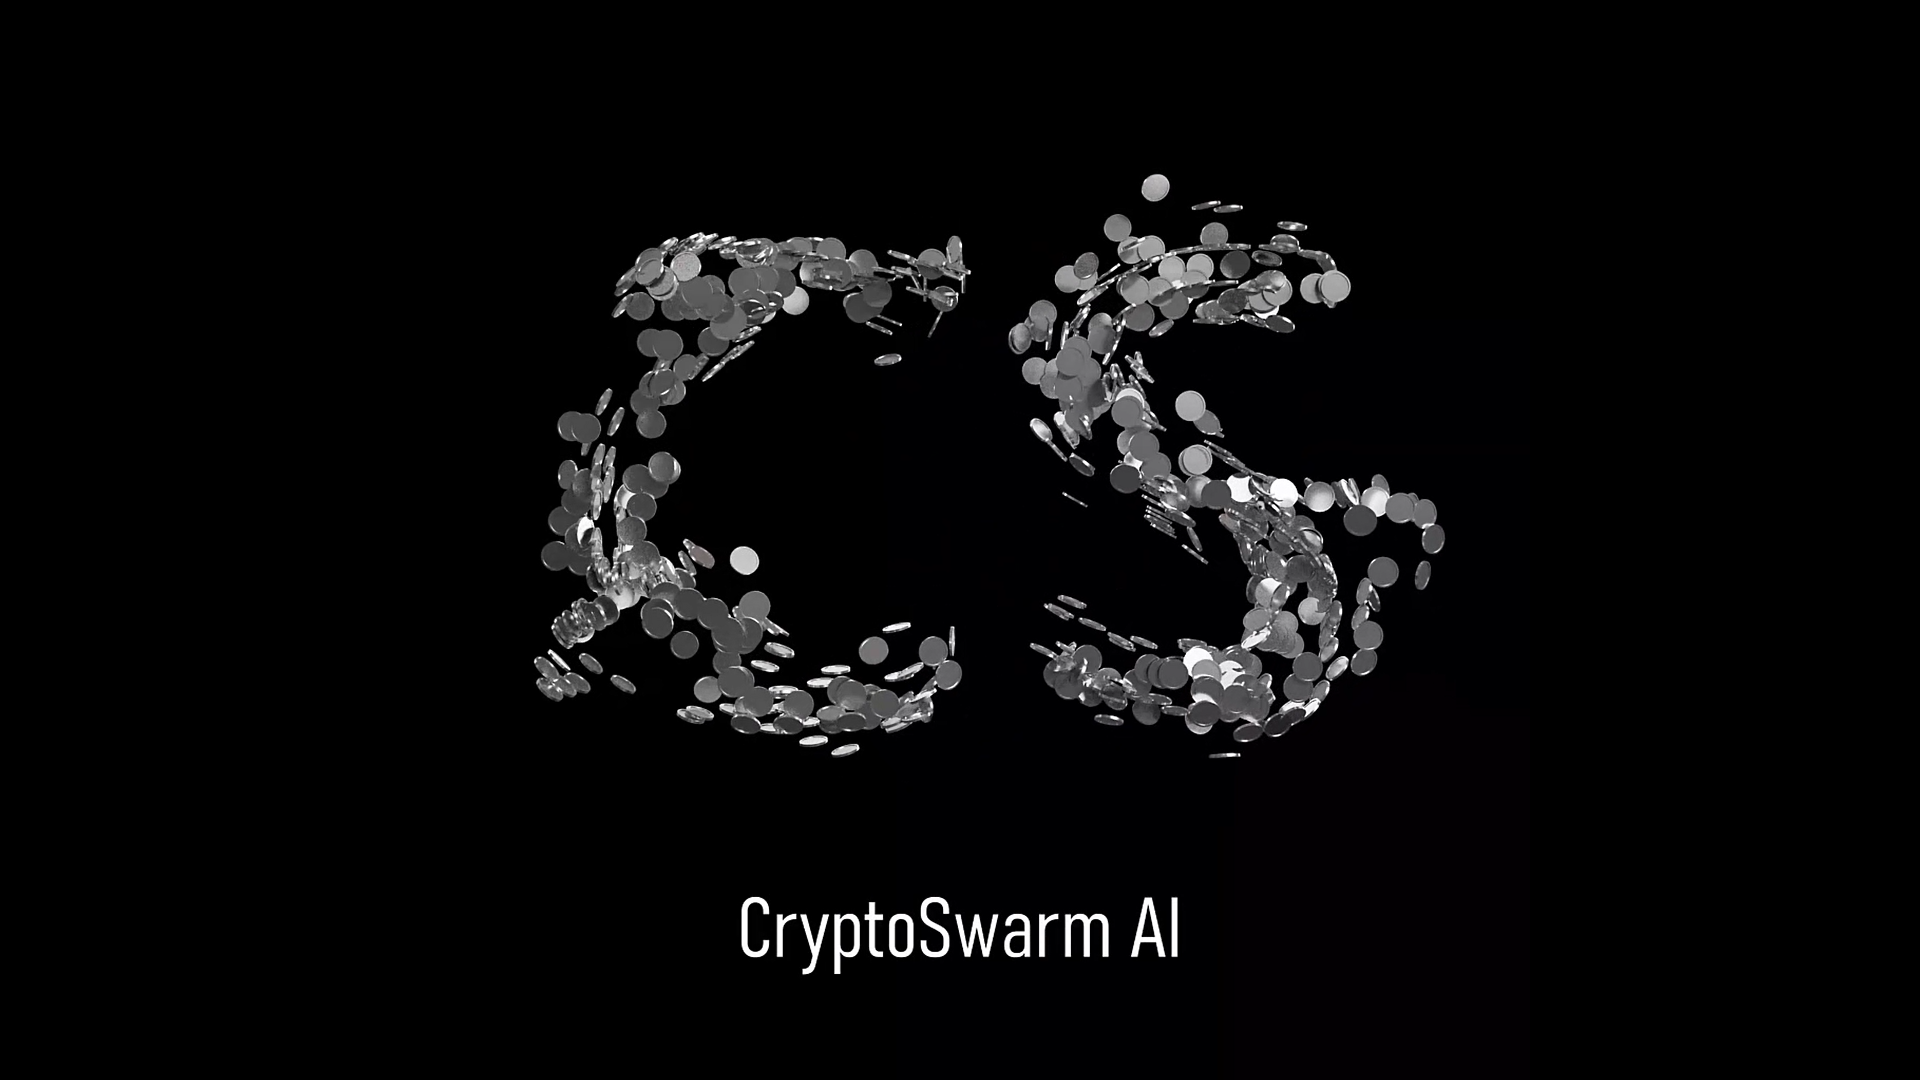 Cryptoswarm